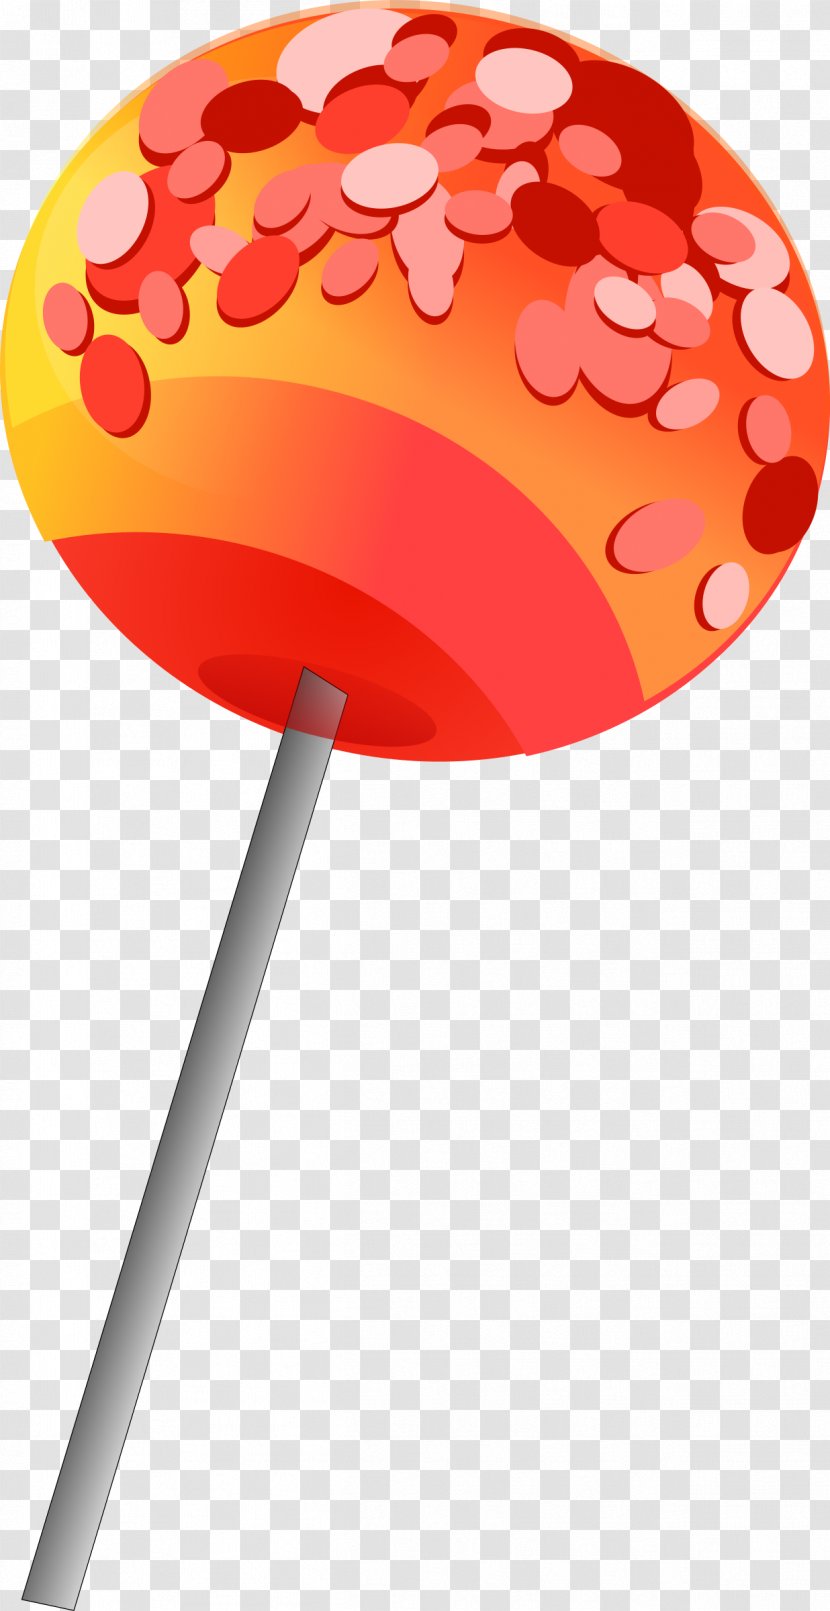 Lollipop Candy Cane Stick Clip Art Transparent PNG